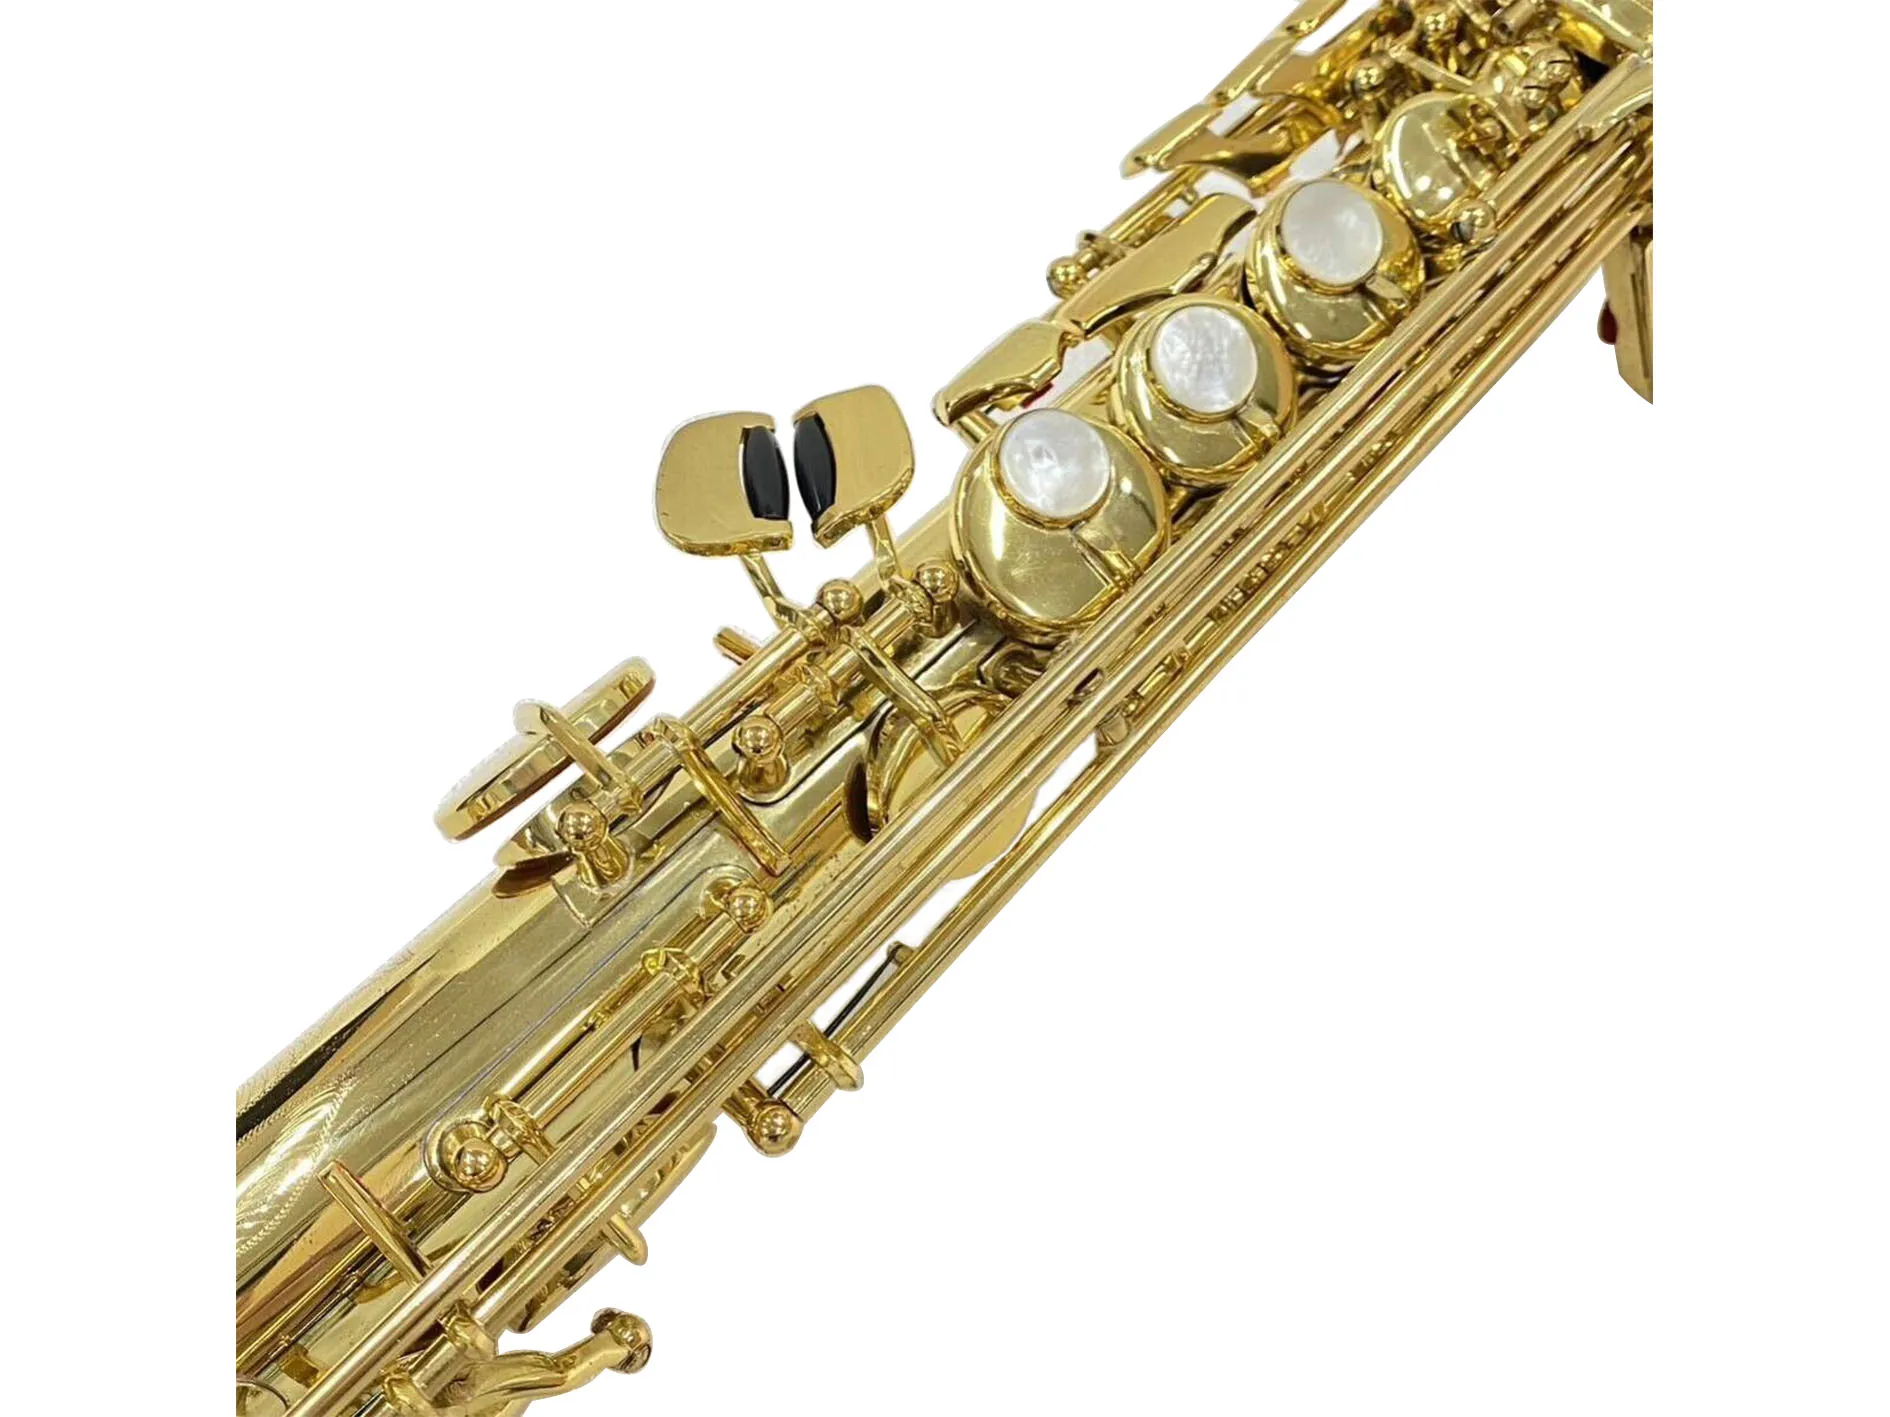 YSS-875 Soprano saxophone Hardcase